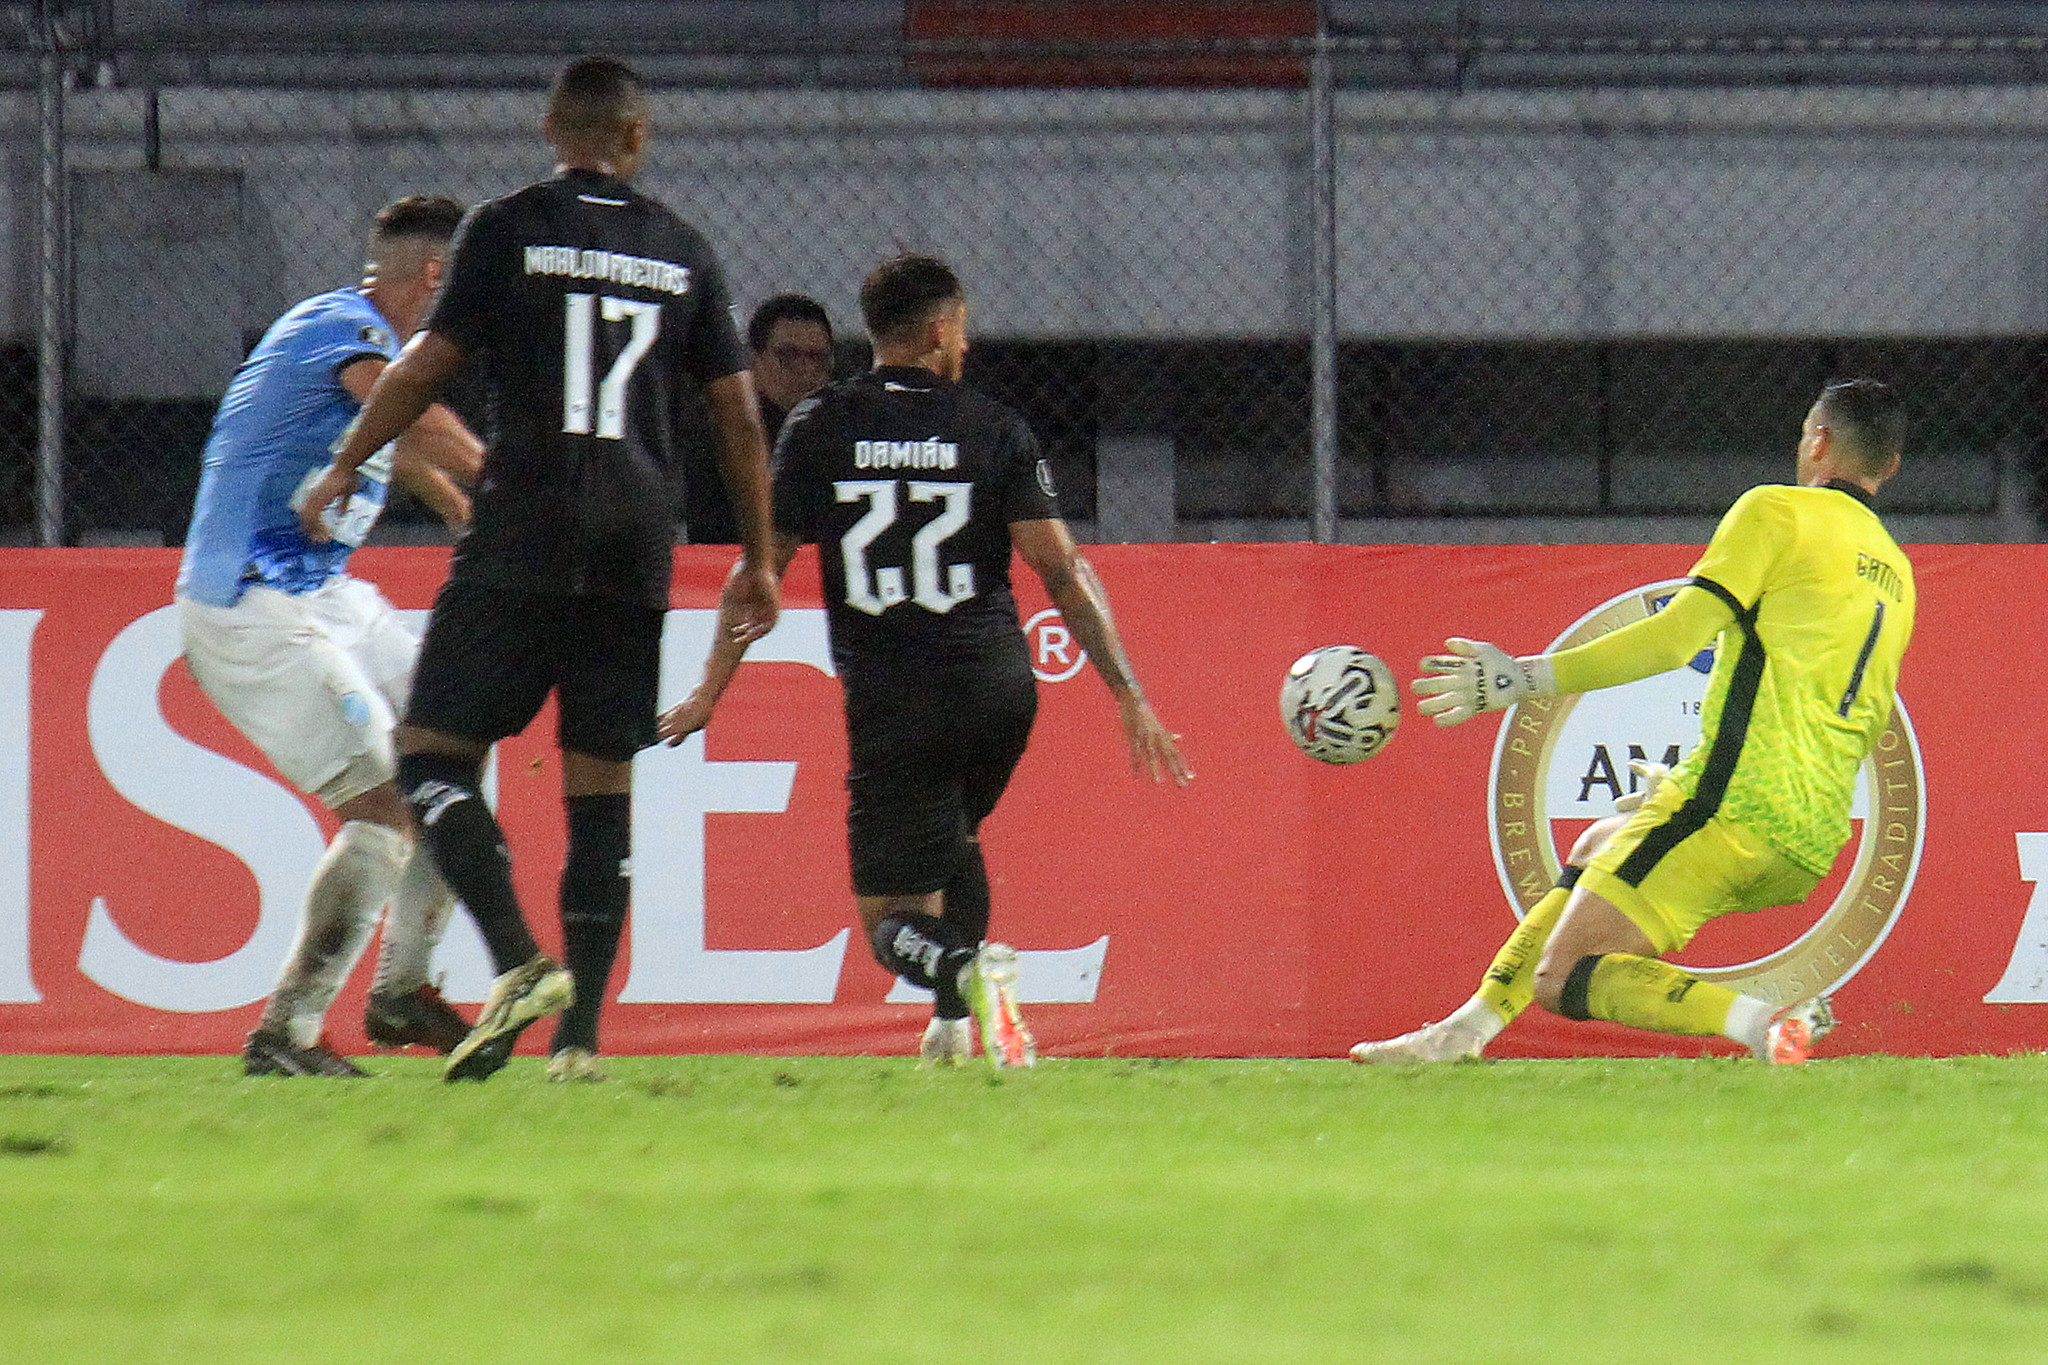 Gatito fazendo uma defesa diante do Aurora (Foto: Vitor Silva/Botafogo)